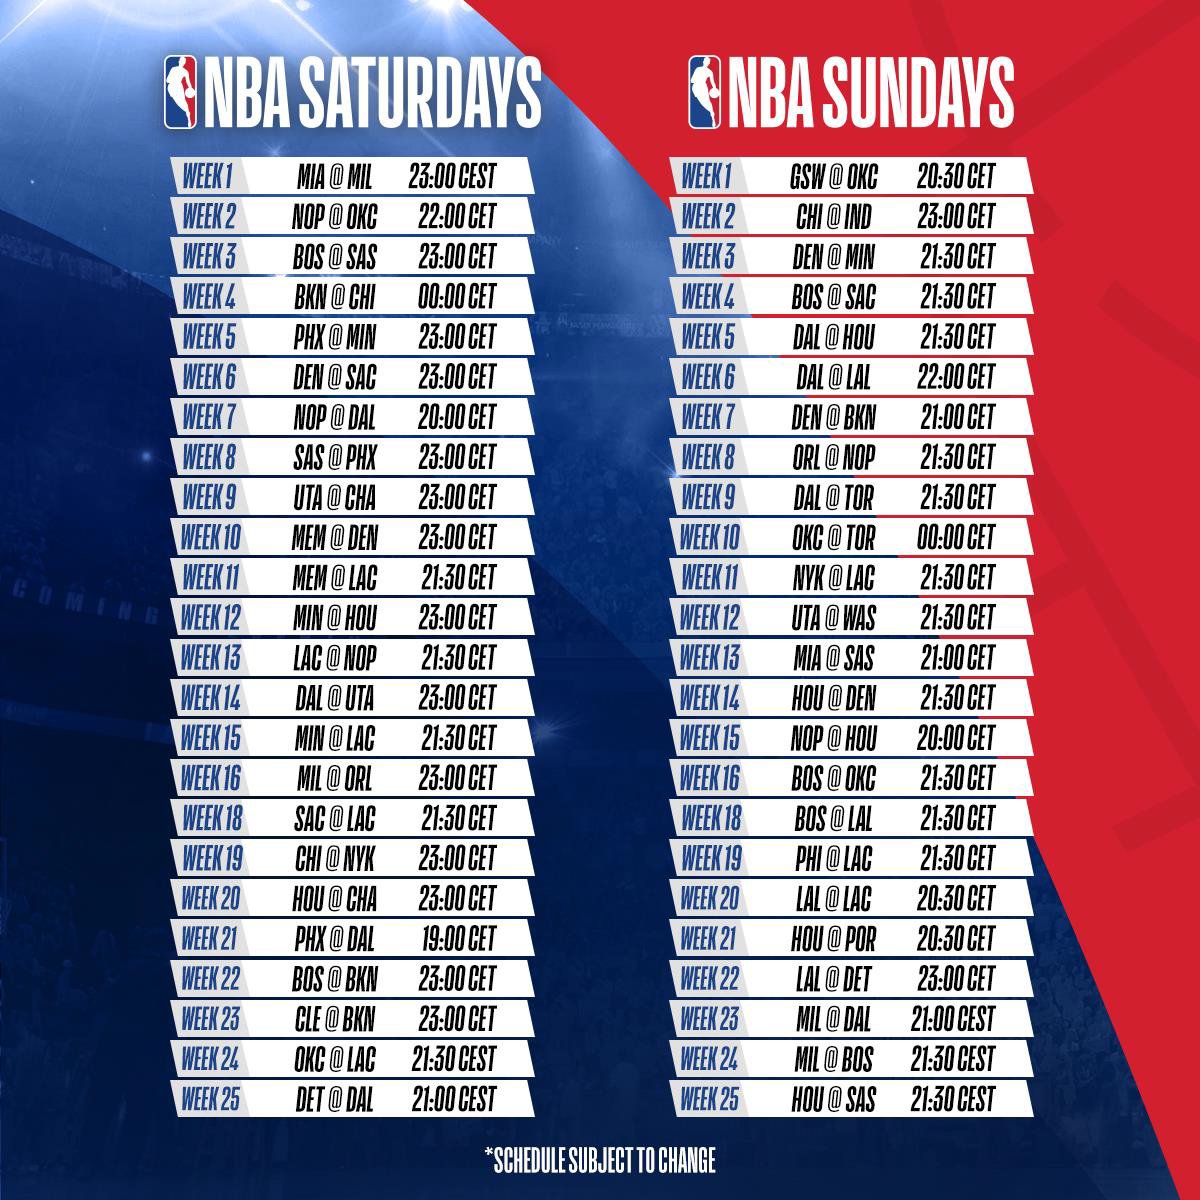 Basket NBA su Sky Sport per altri 4 anni, rinnovo fino alla stagione 2022-23 